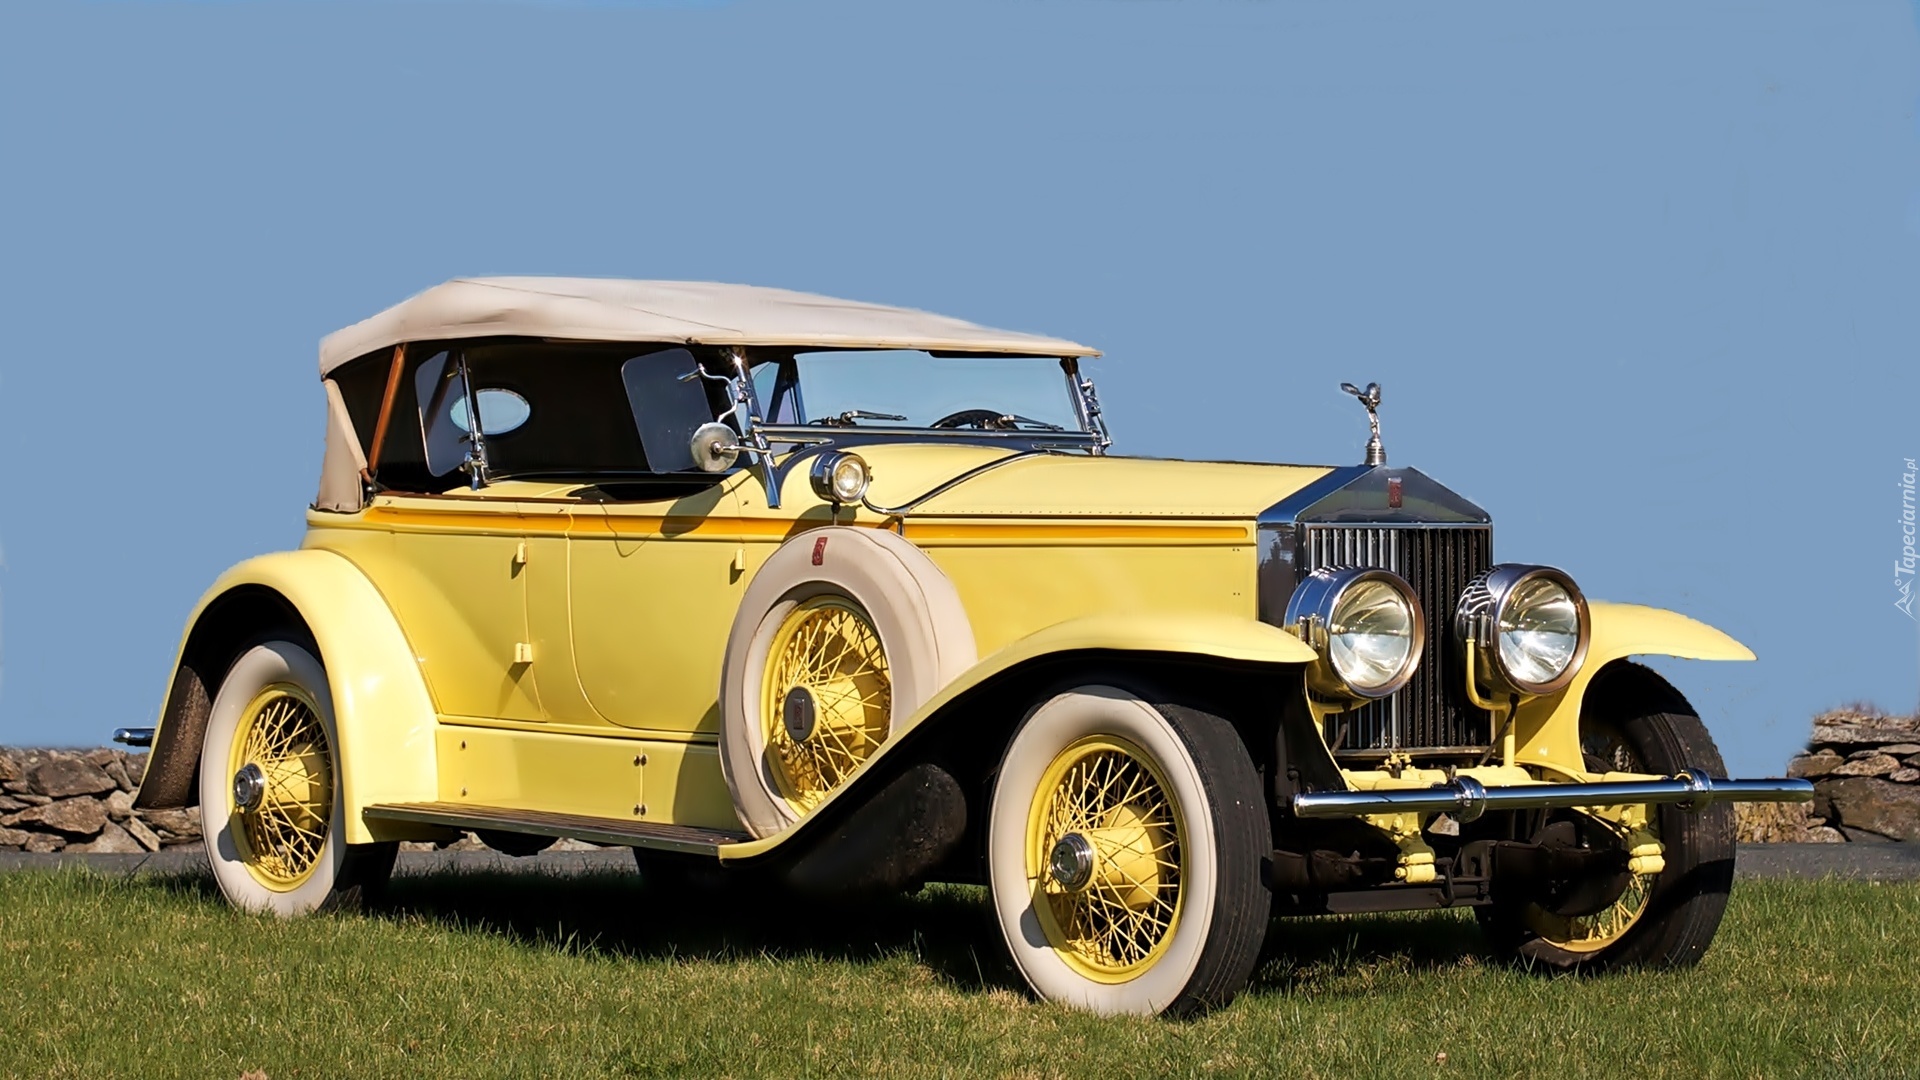 Samochód, Zabytkowy, Rolls-Royce, Phantom, 1929